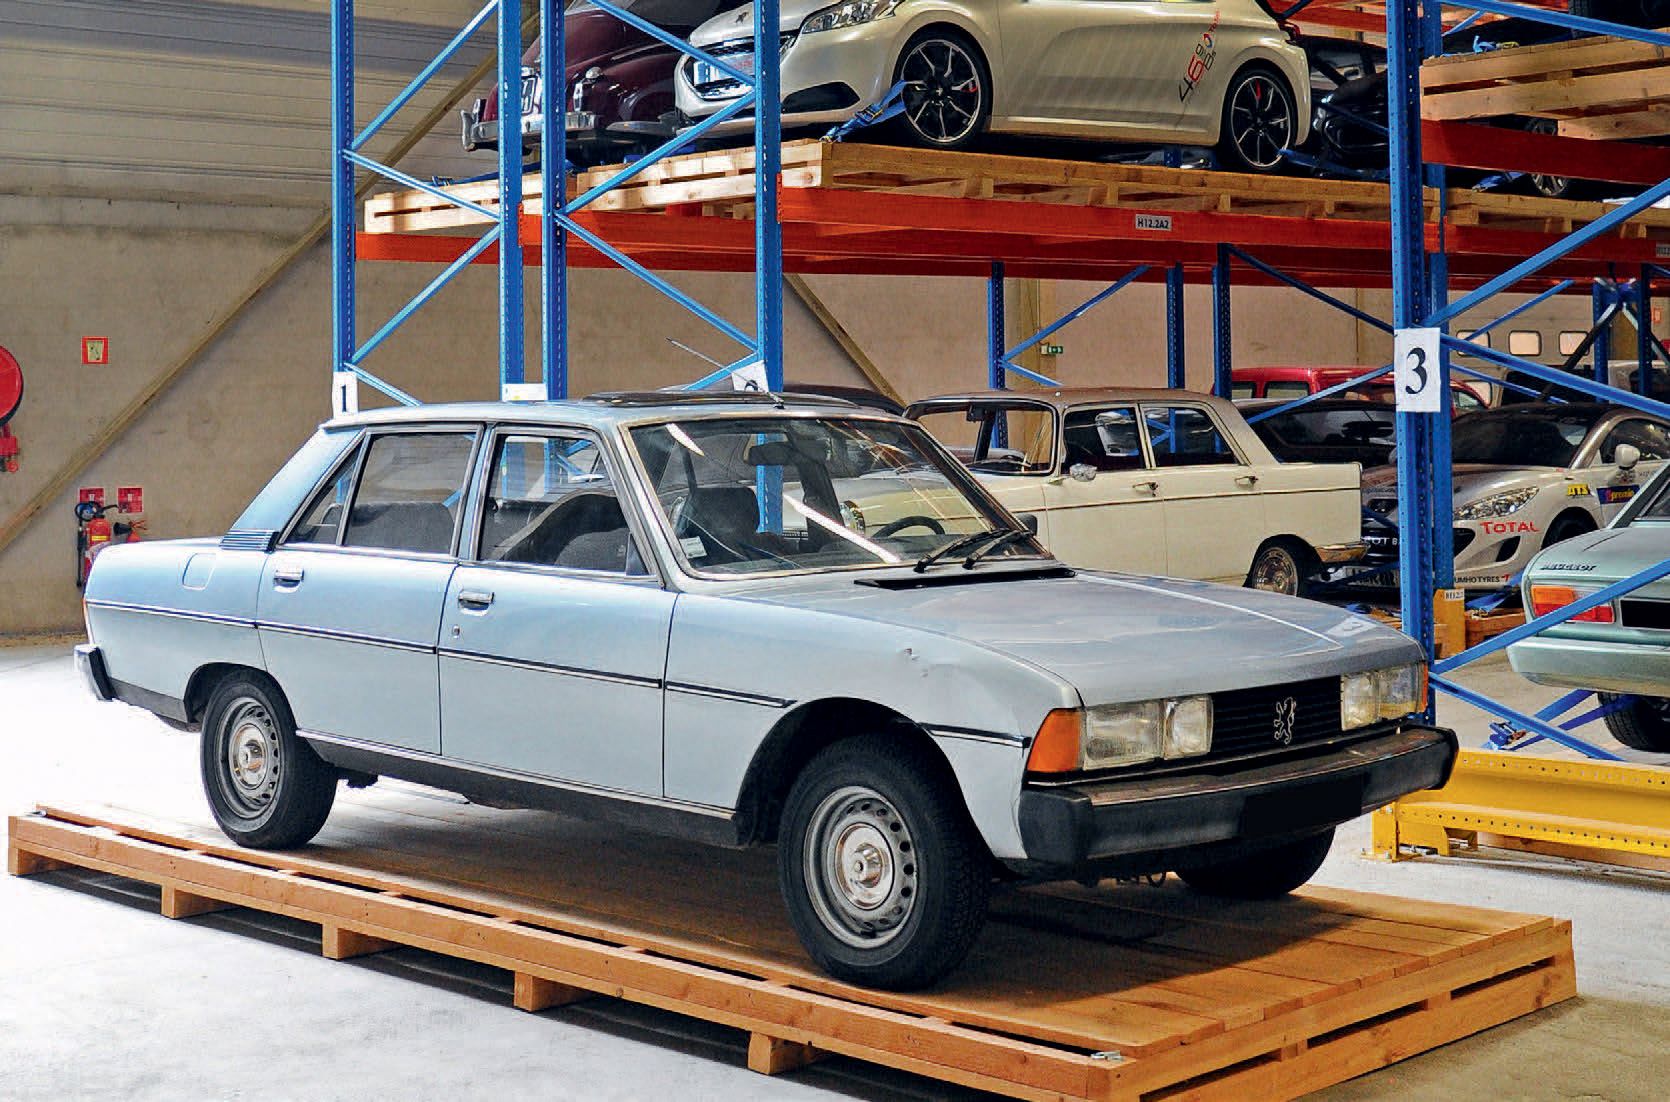 1979 Peugeot 604 TI 
1980年代的法国豪华汽车

有趣的翻修项目

漂亮的铜锈



法国注册

没有技术控制

底盘编号：561354
&hellip;